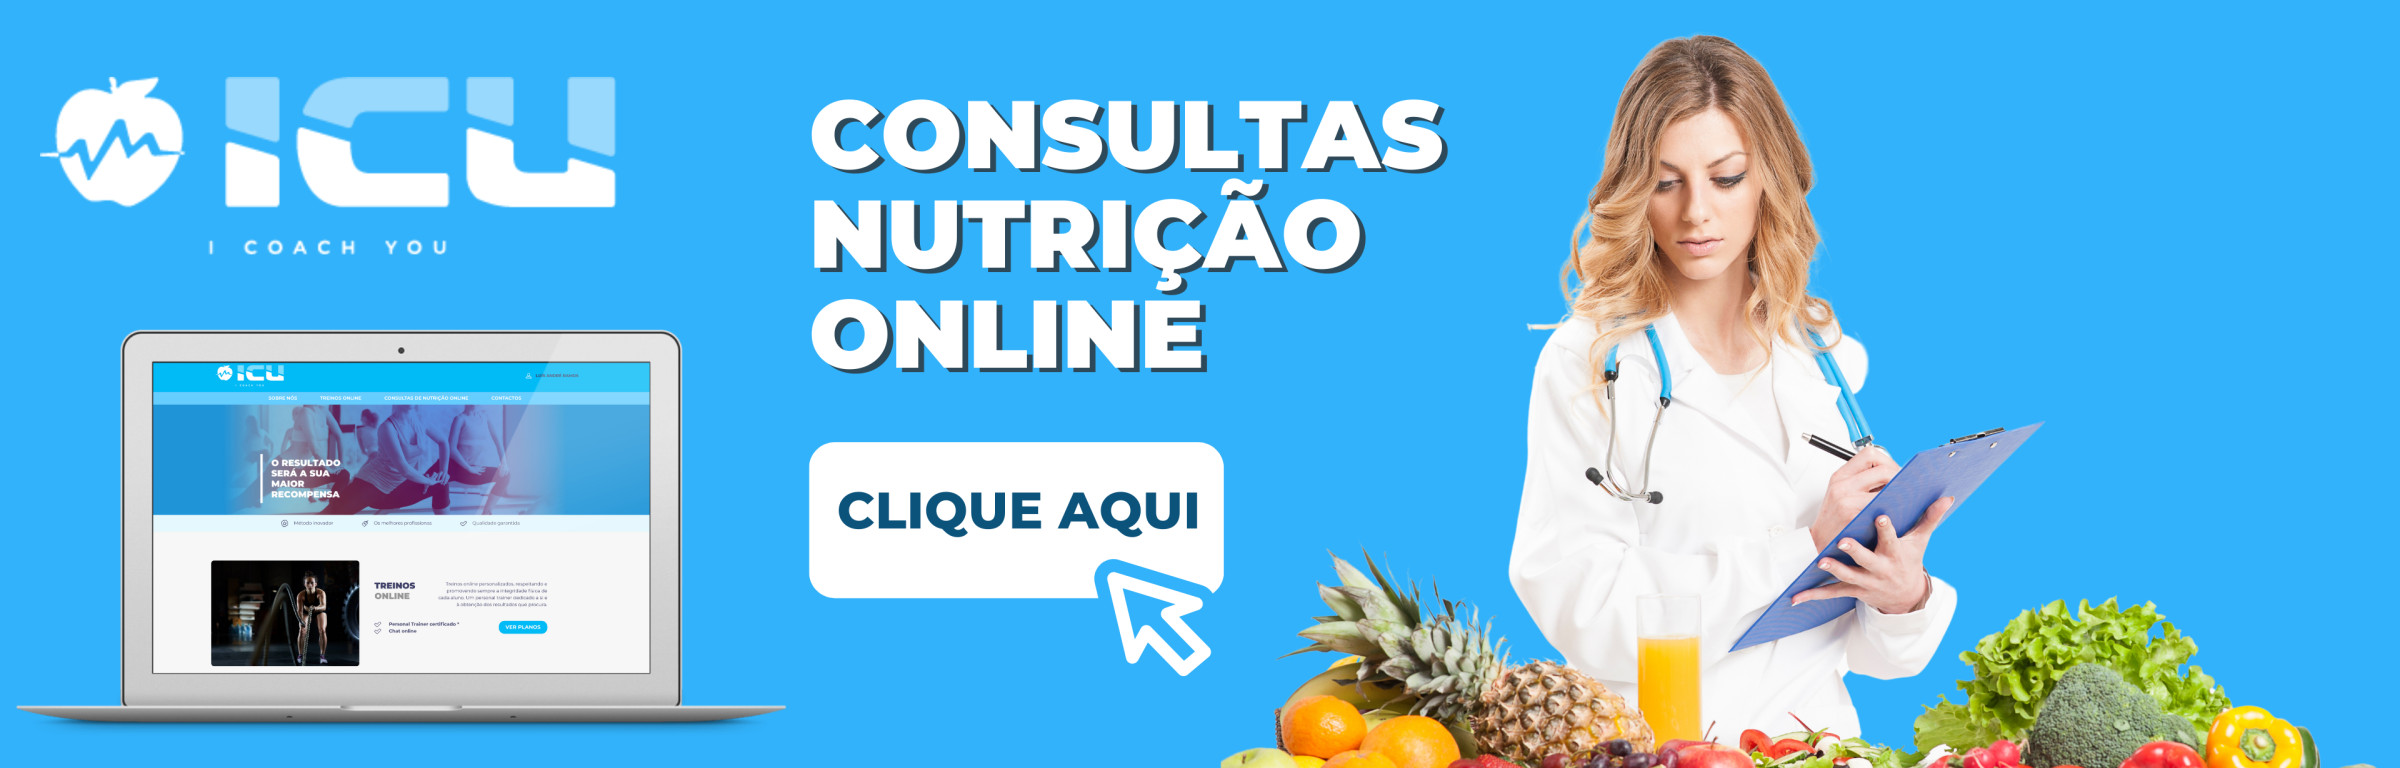 Consultas de nutrição online - Consultas de nutrição online ICU